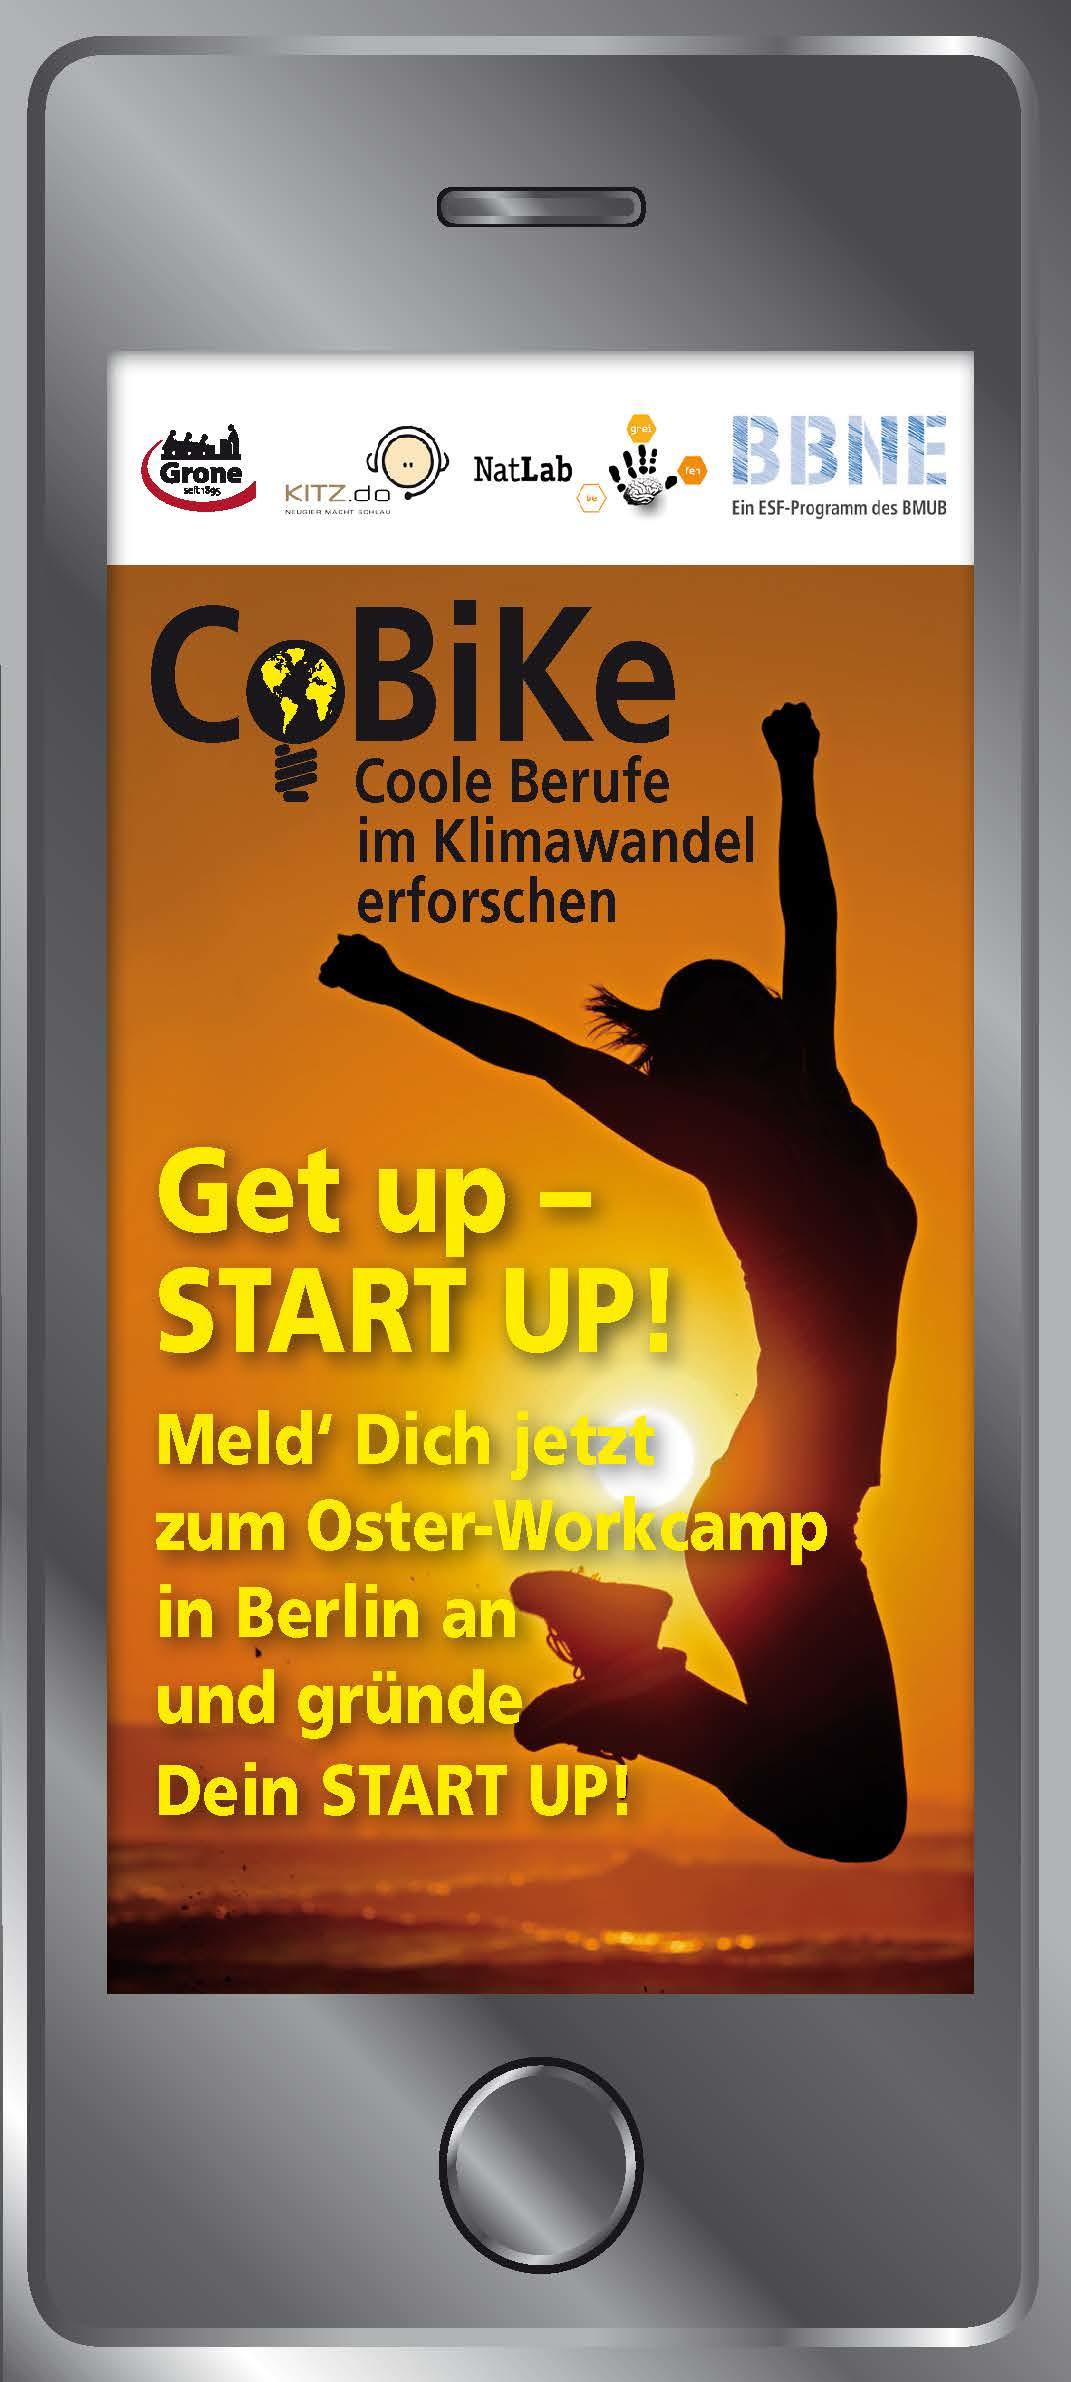 Get-up-Start-up_Berlin